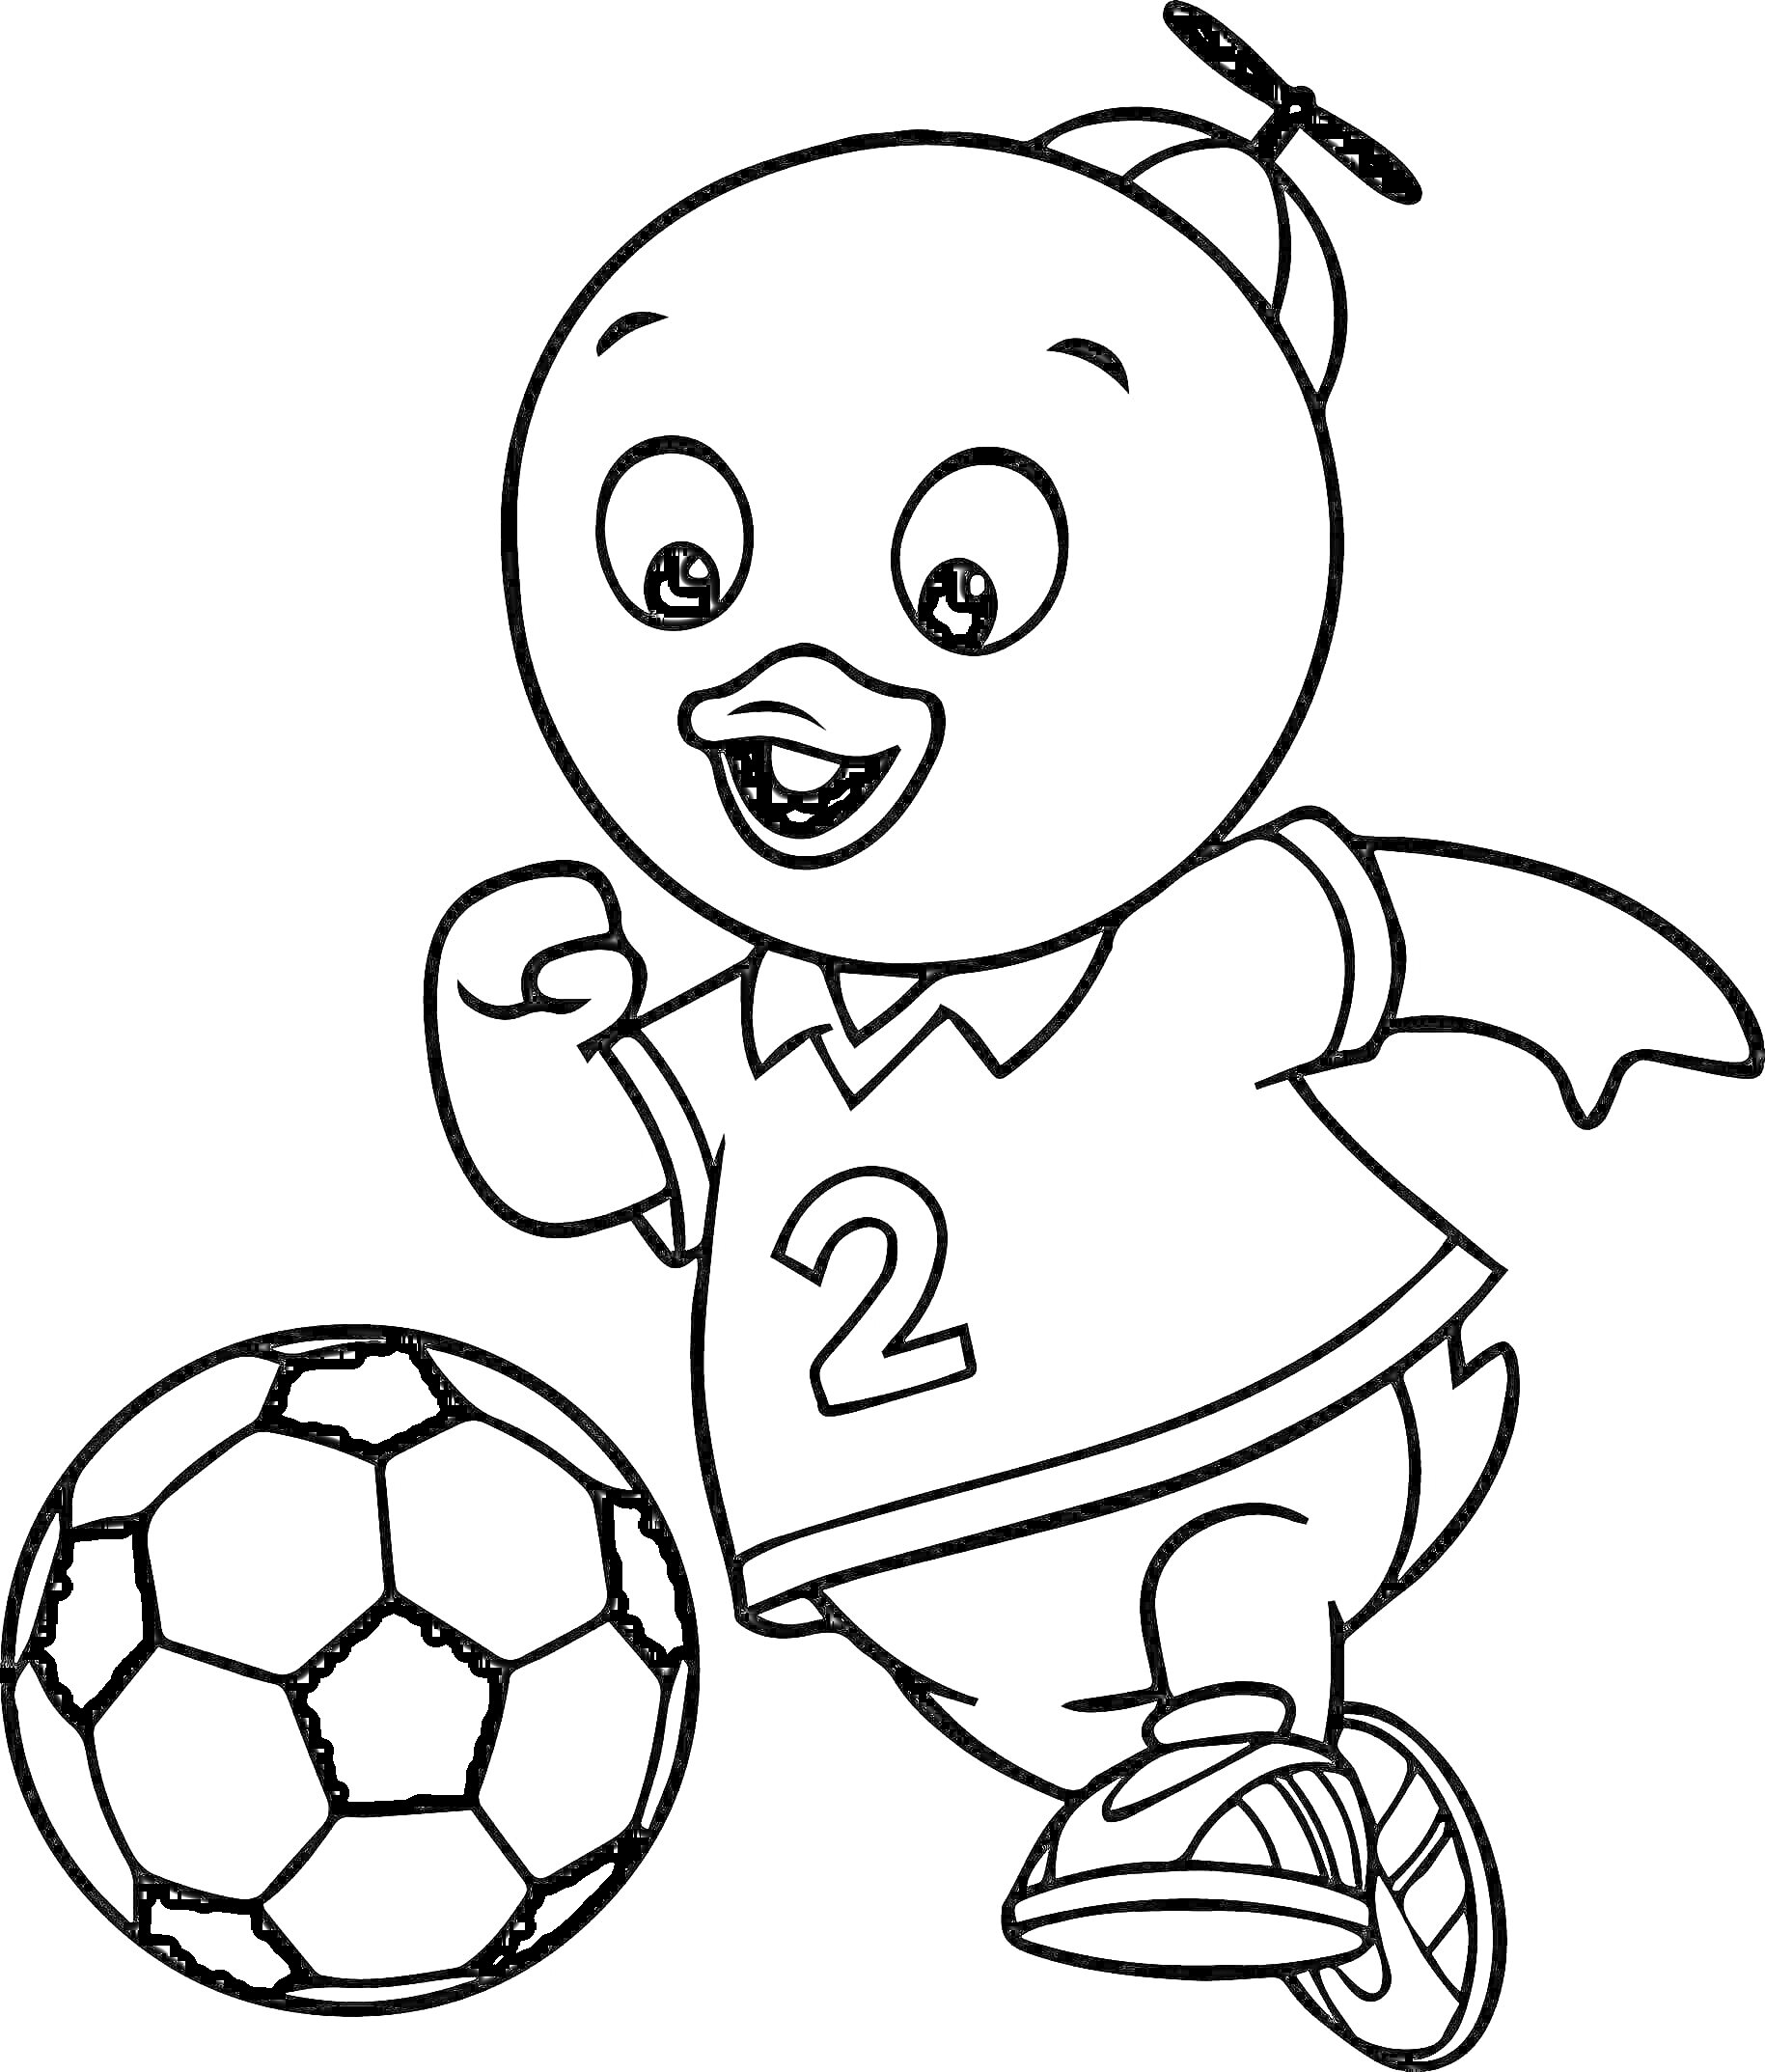 Раскраска мультяшный утенок в майке с номером 2 бежит с футбольным мячом